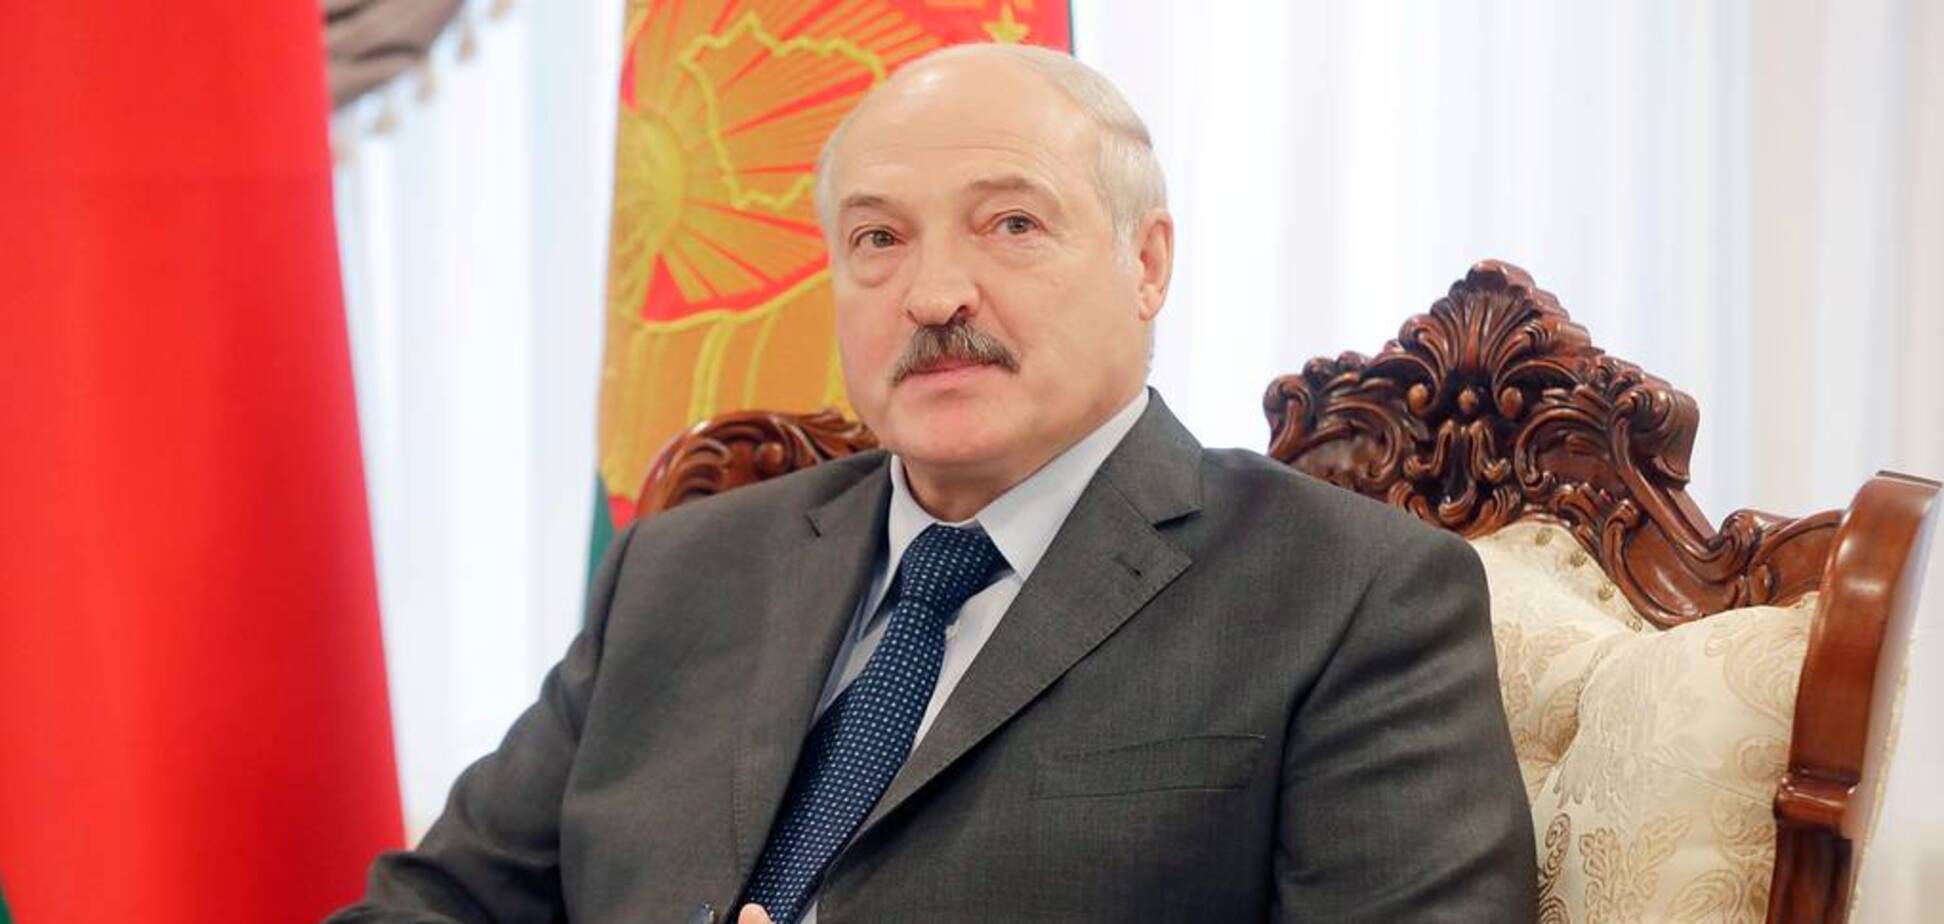 У Білорусі заявили, що Лукашенко 'не відступить, навіть якщо покладе півкраїни'